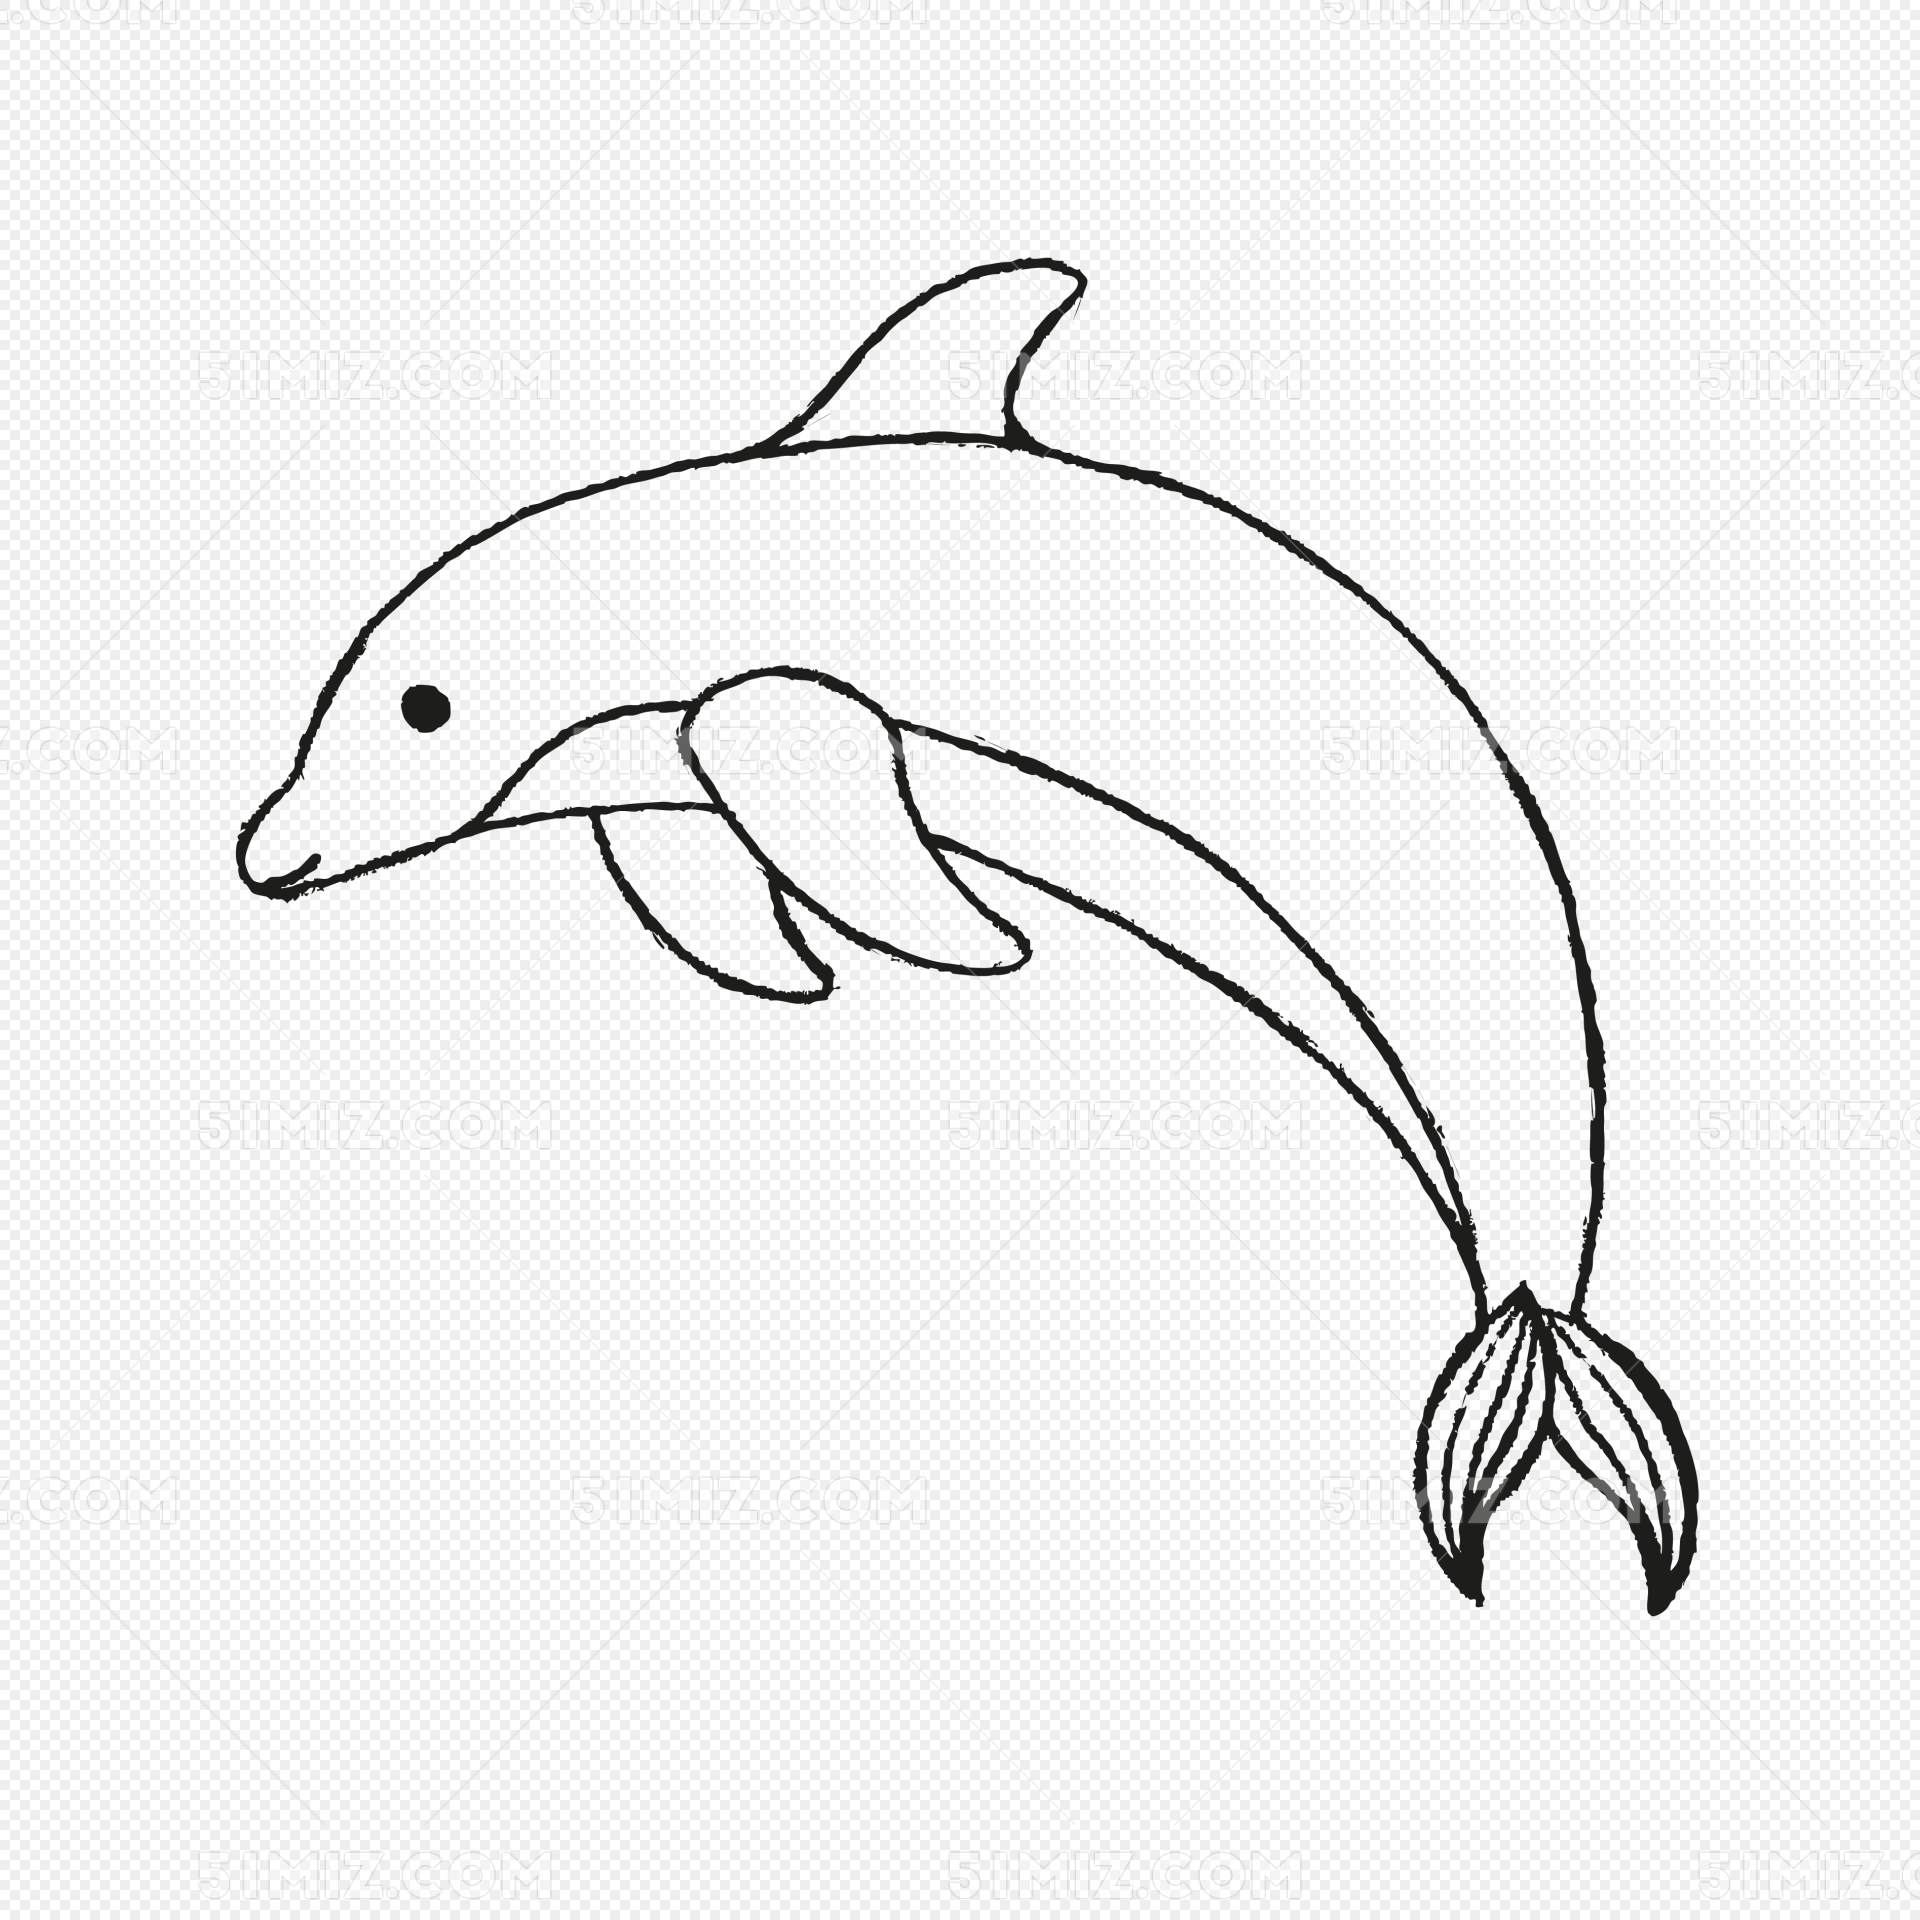 简单儿童可打印简笔画填色画课程 简单漂亮小鱼的故事手绘（点和线组成的图画儿童画） - 有点网 - 好手艺